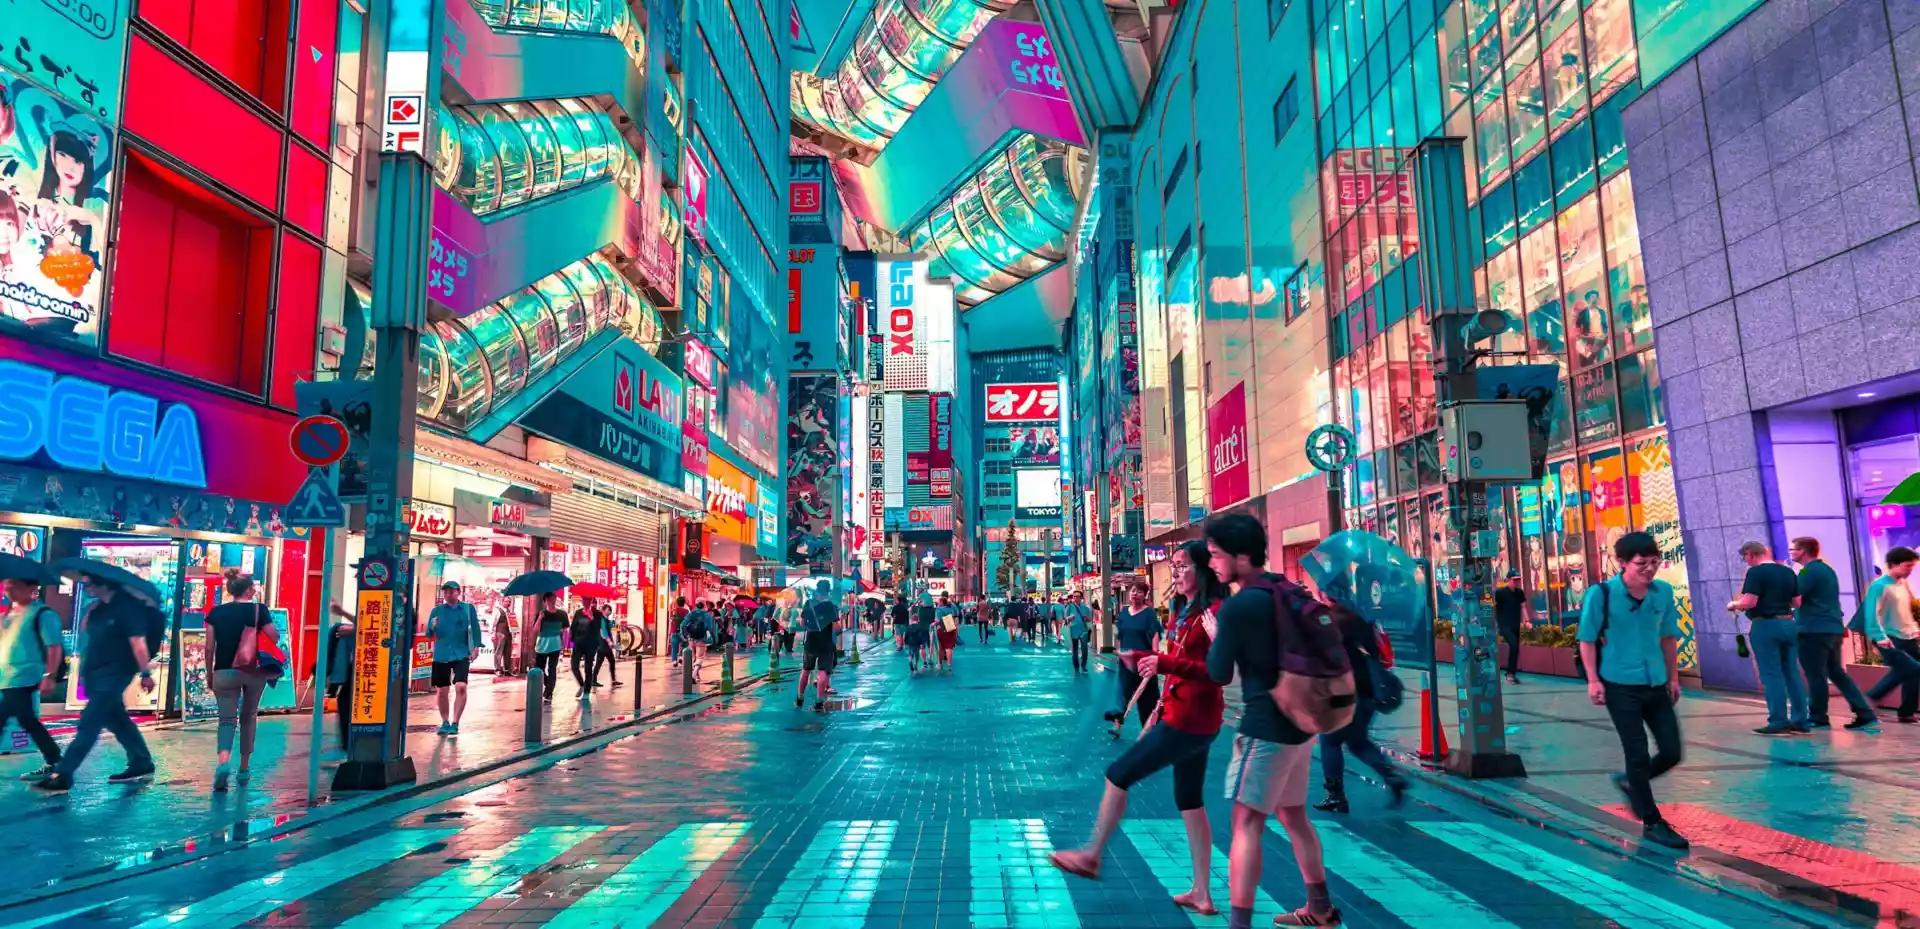 Gate i Tokyo omgitt av høye bygninger og neonlys. Gaten er fylt av mennesker både på veien og på gangfelt.